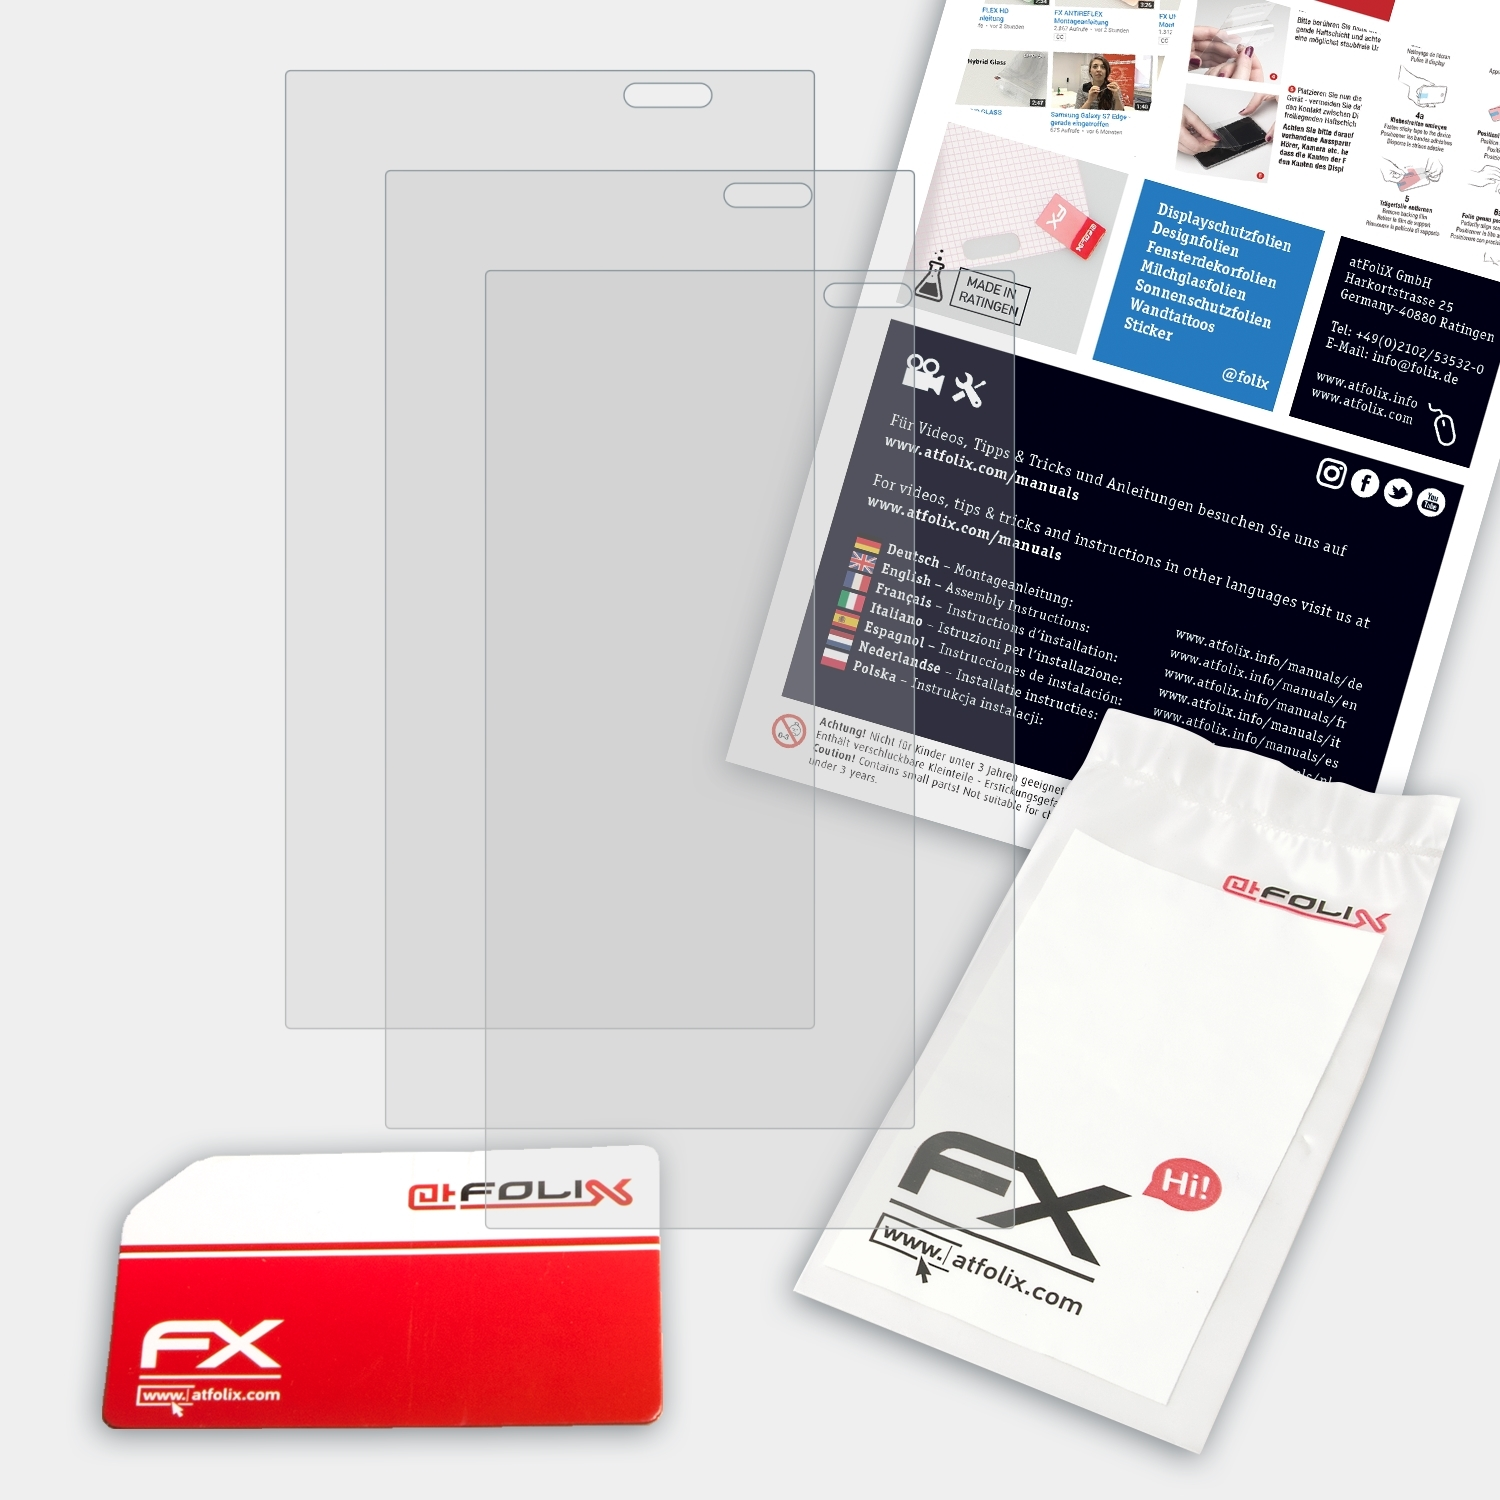 ATFOLIX 3x FX-Antireflex LG Displayschutz(für 3D Optimus (P920))